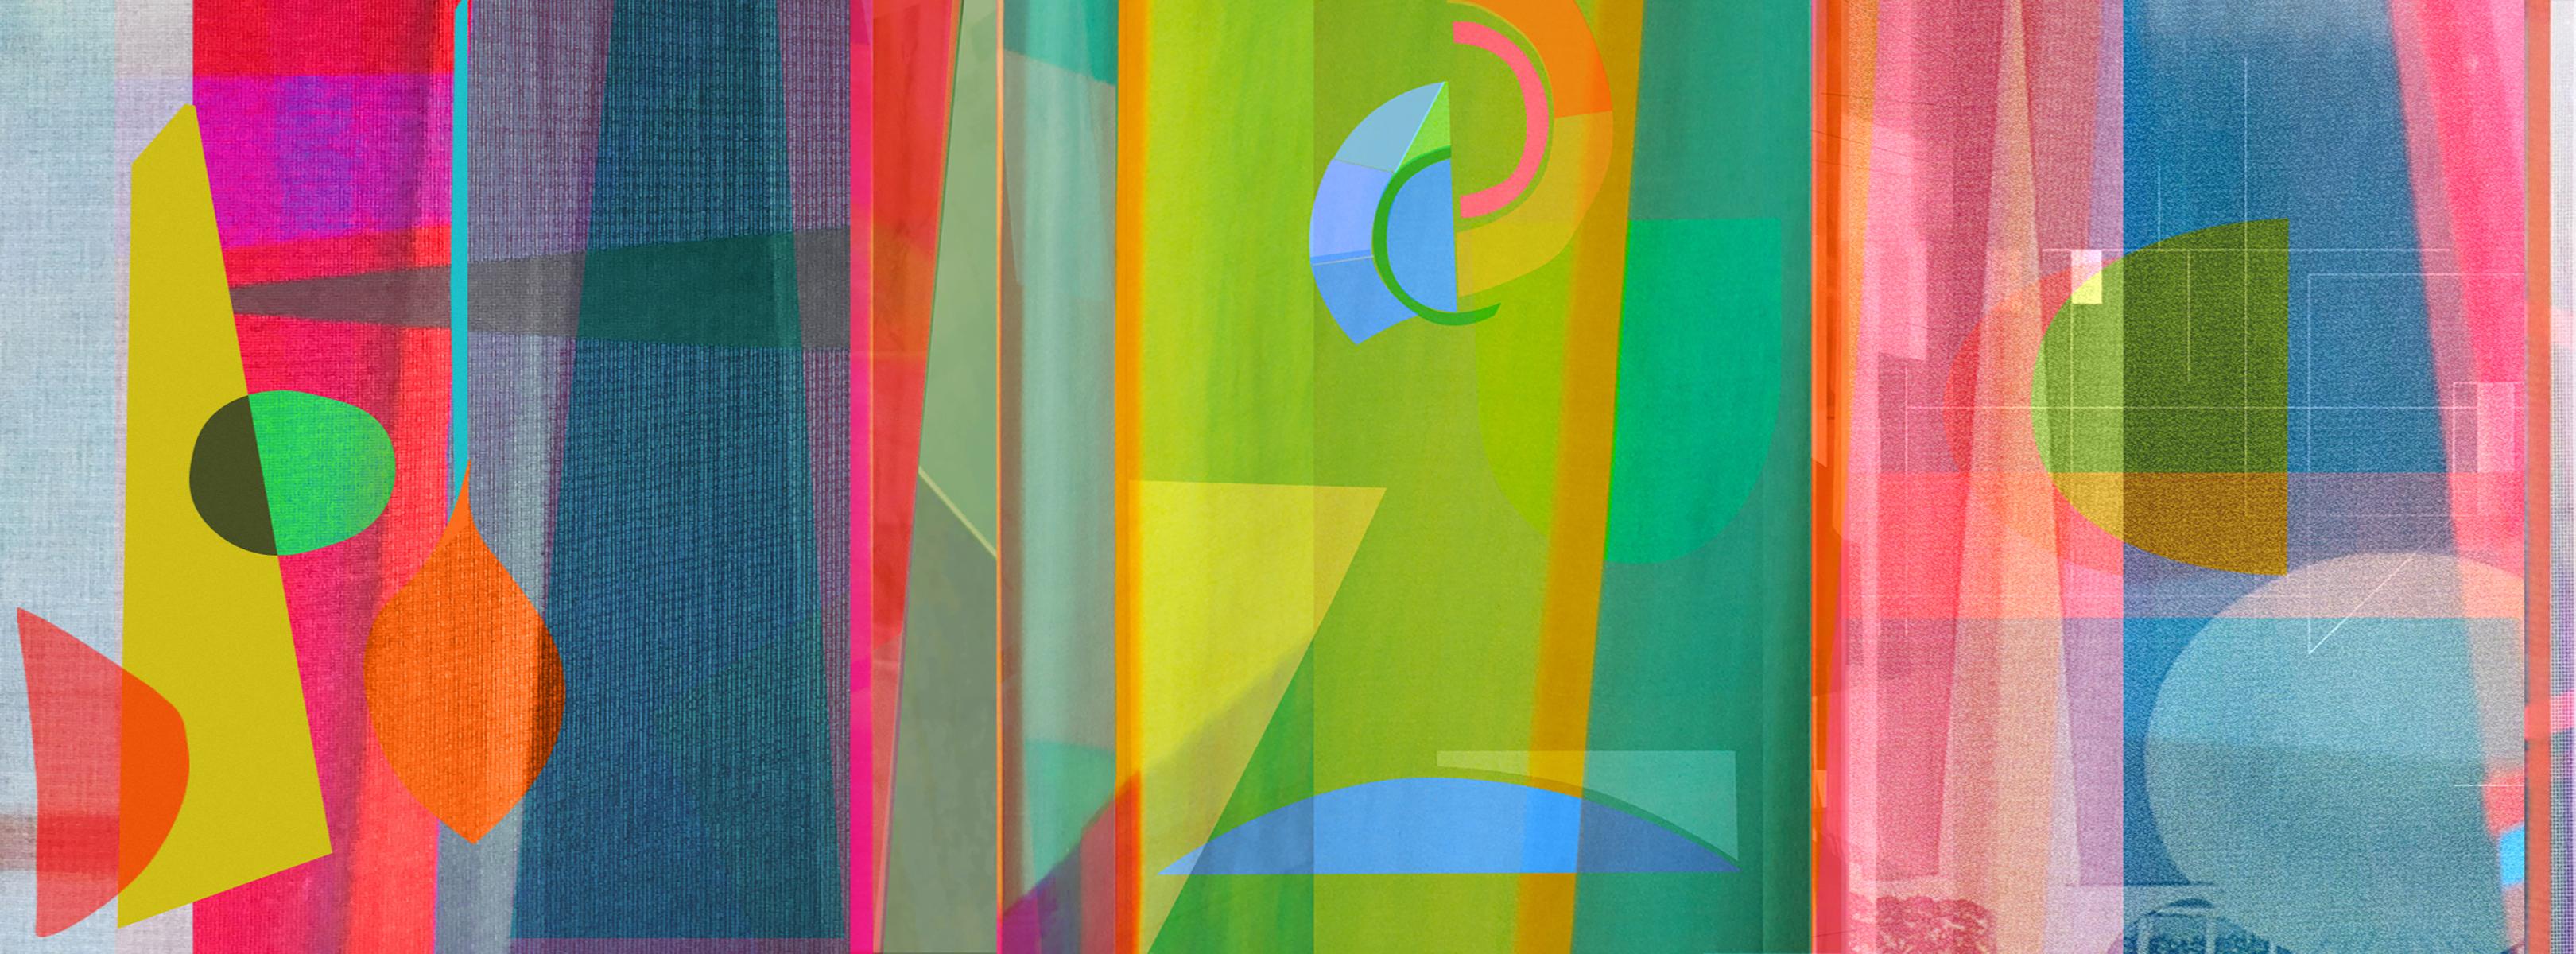 Monika Bravo Color Photograph – Zeitlos 17. Abstrakte Farbfotografie in limitierter Auflage